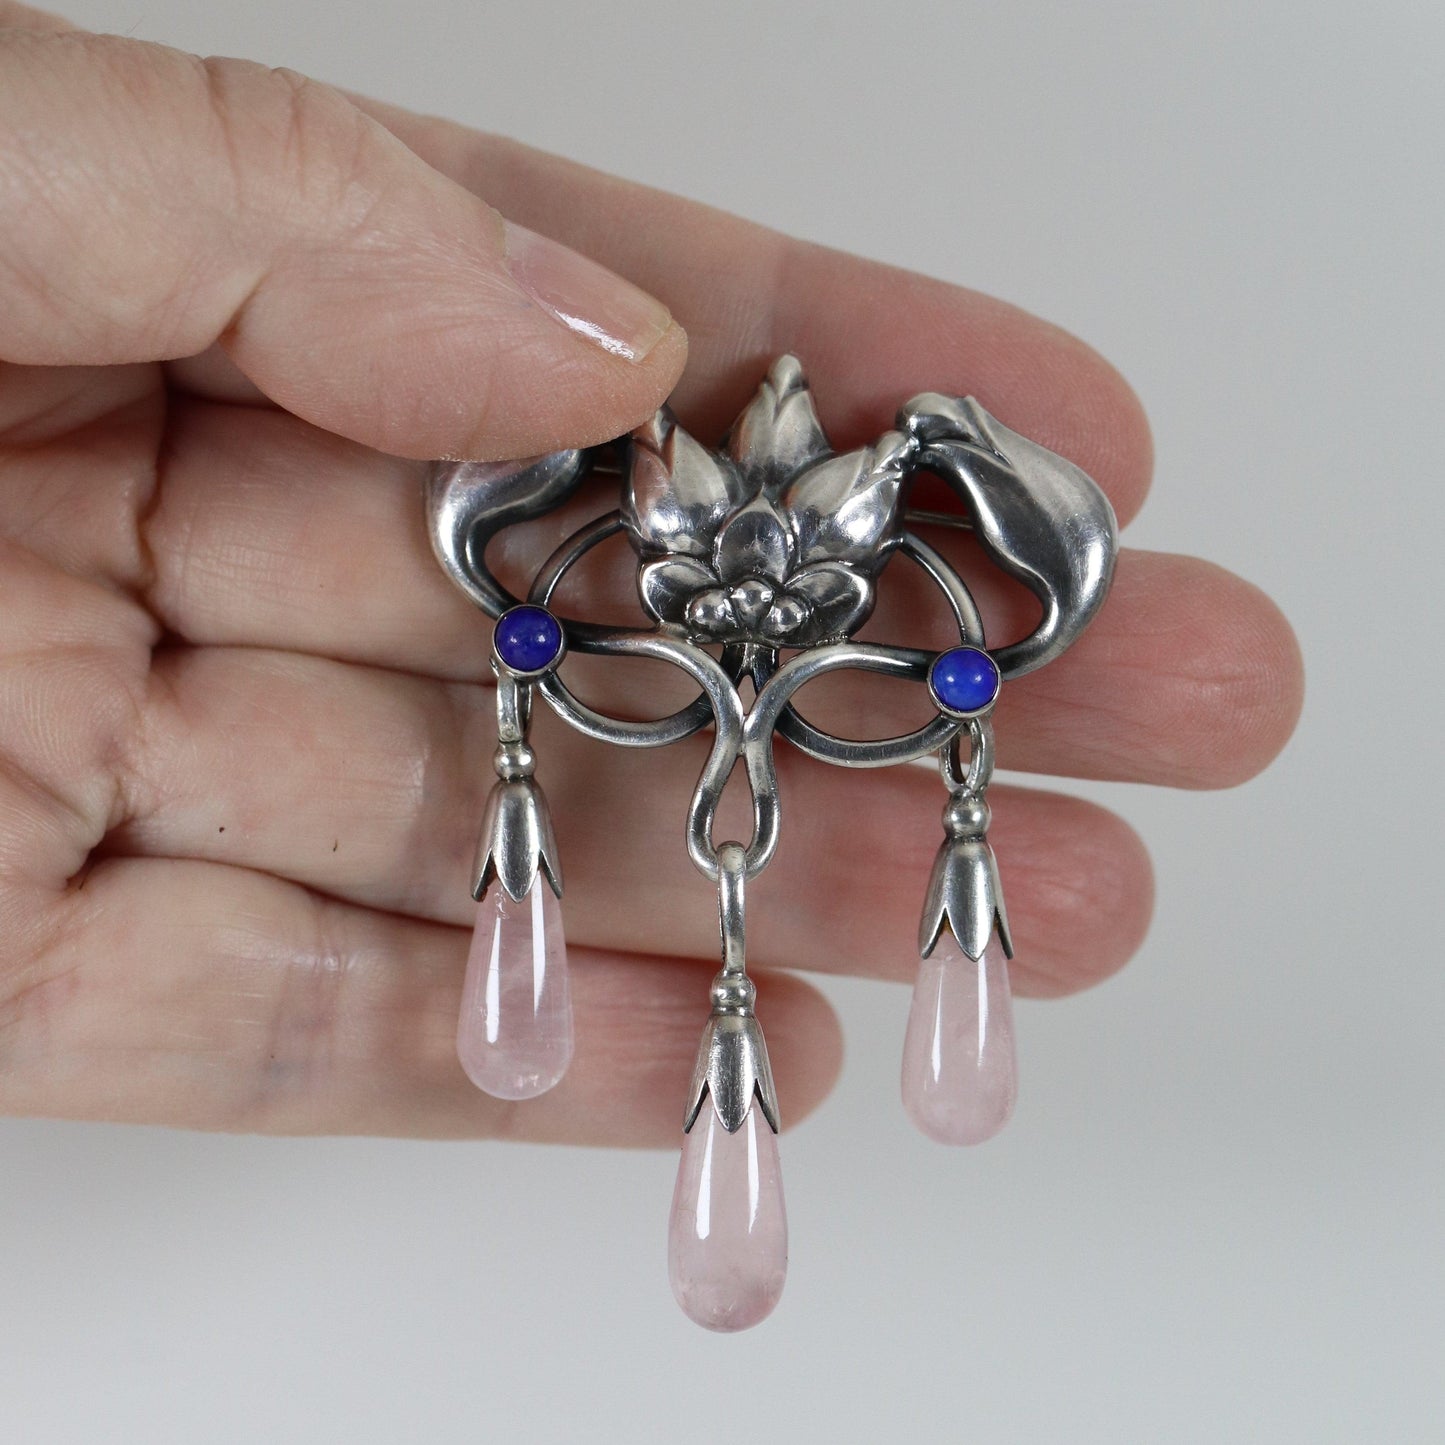 Georg Jensen Jewelry | Pink Quartz Art Nouveau Silver Vintage Brooch 151 - Carmel Fine Silver Jewelry